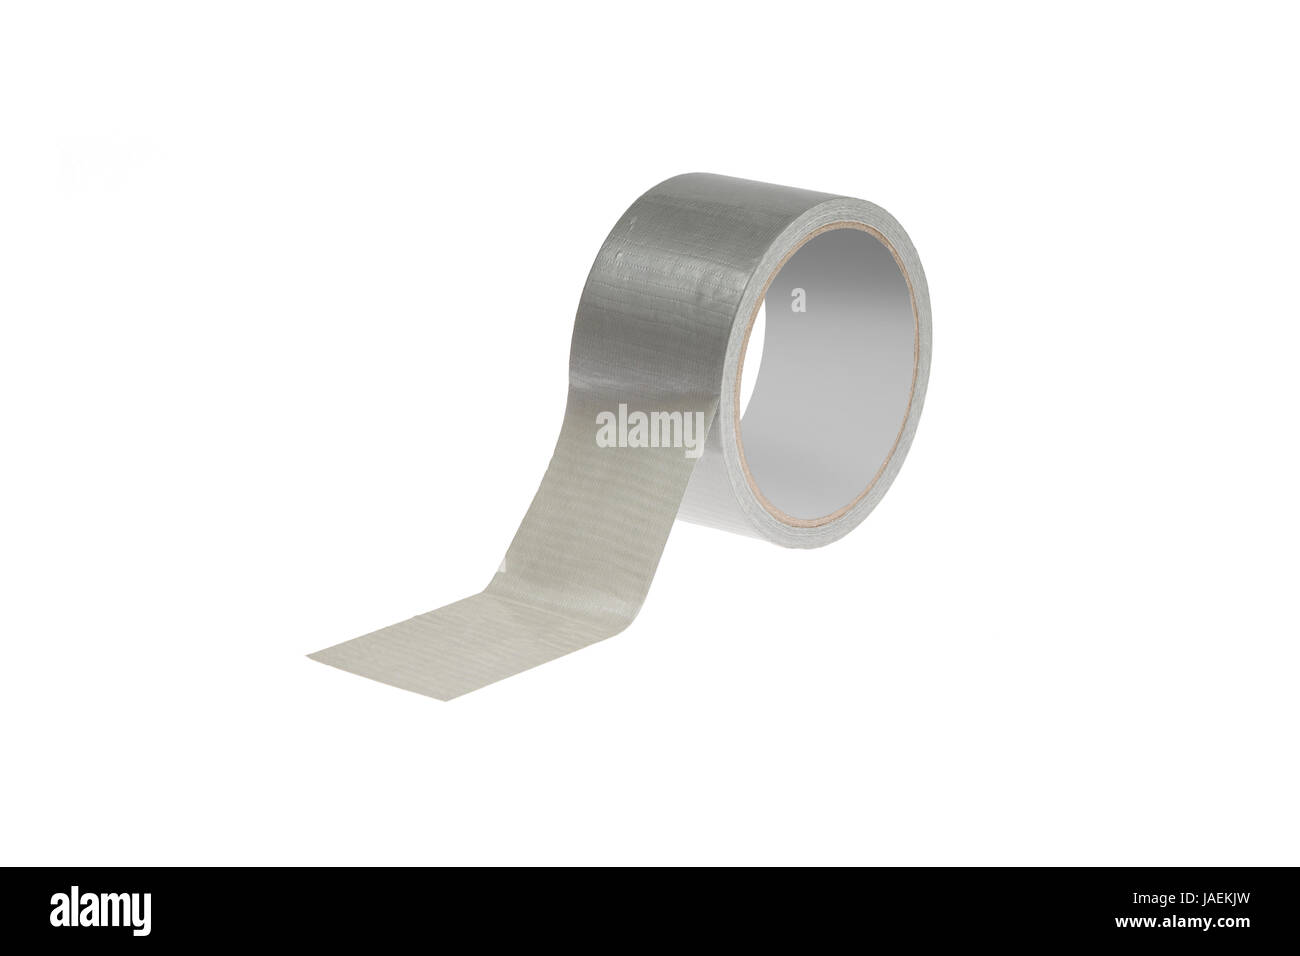 Eine Rolle silbernes Klebeband  / duct tape  freigestellt auf weißem Hiuntergrund - A roll of duct tape isolated on white background Stock Photo